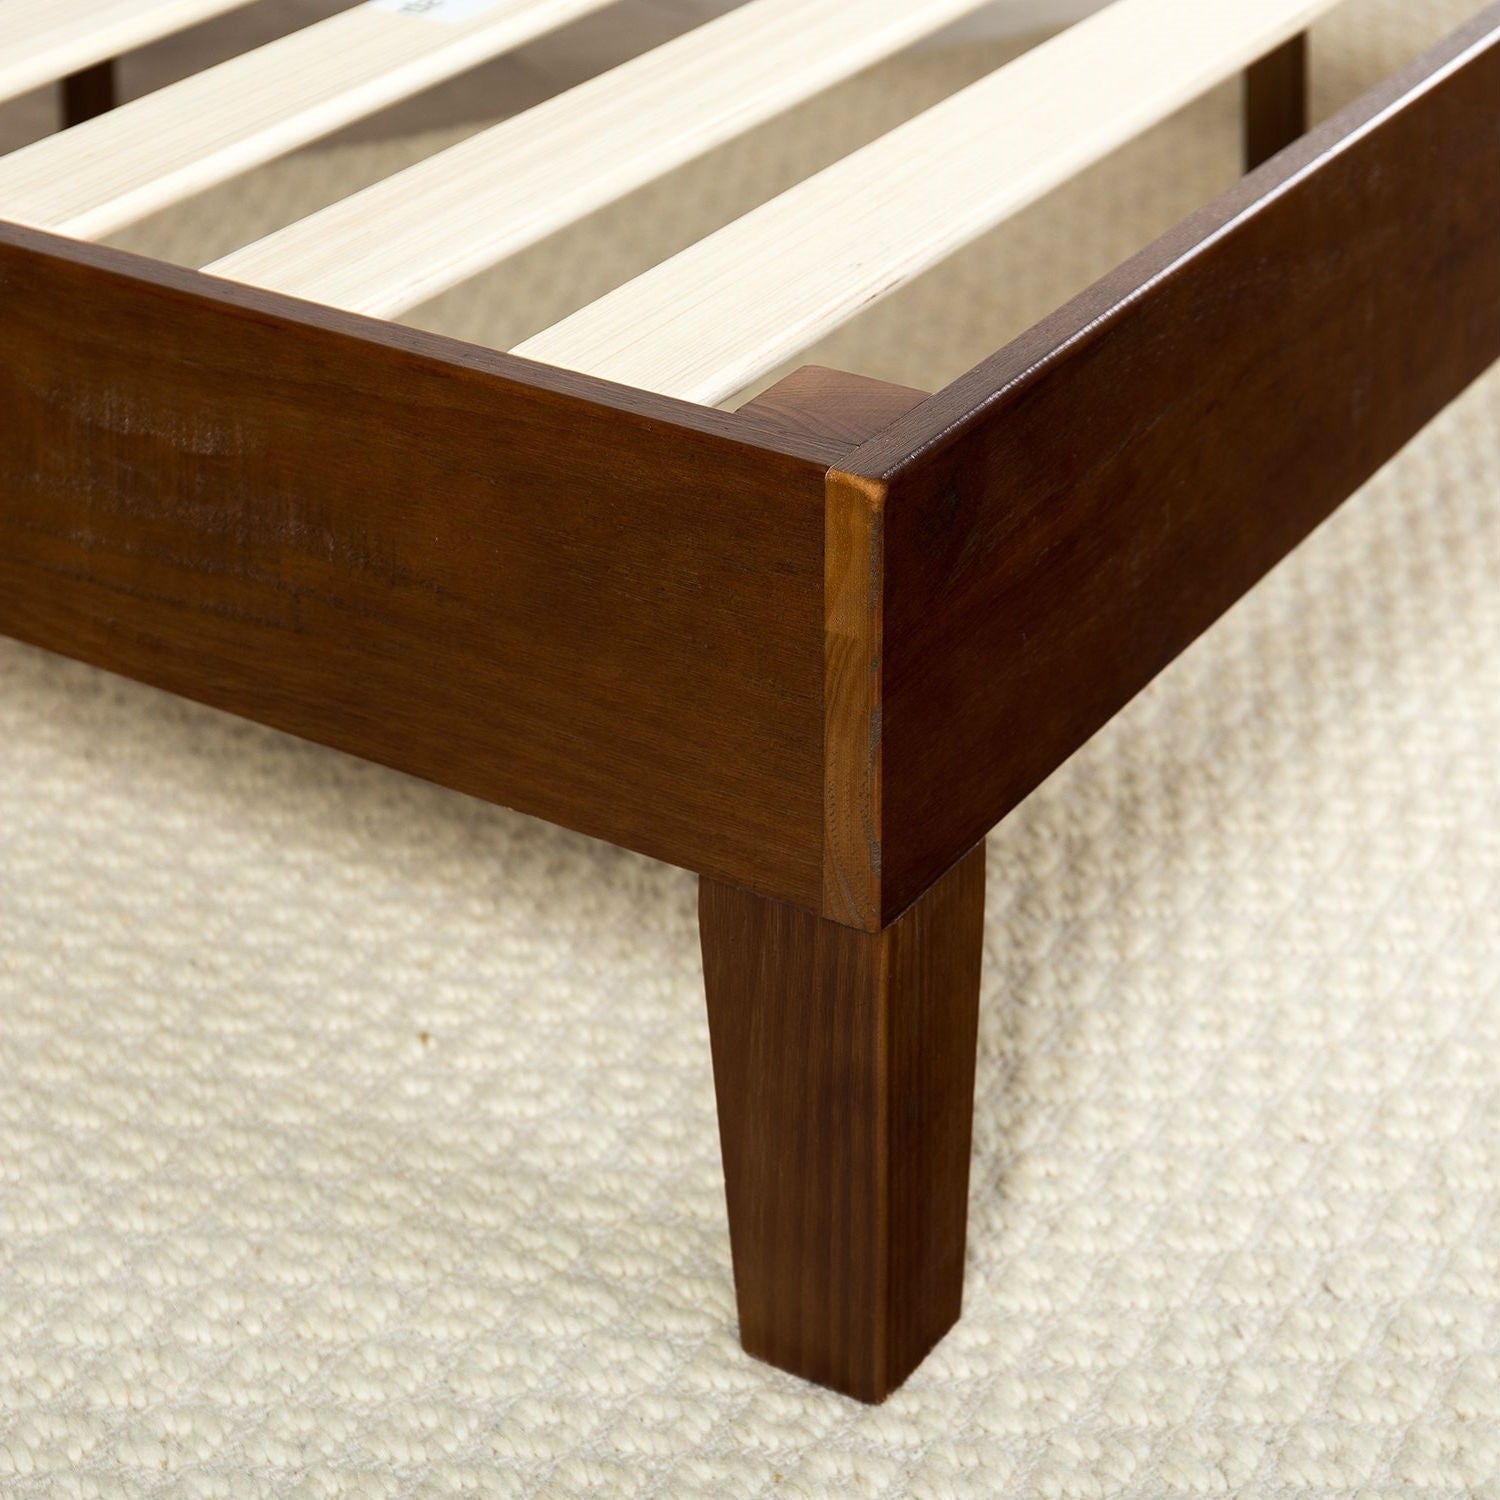 Bedroom > Bed Frames > Platform Beds - King Size Low Profile Solid Wood Platform Bed Frame In Espresso Finish